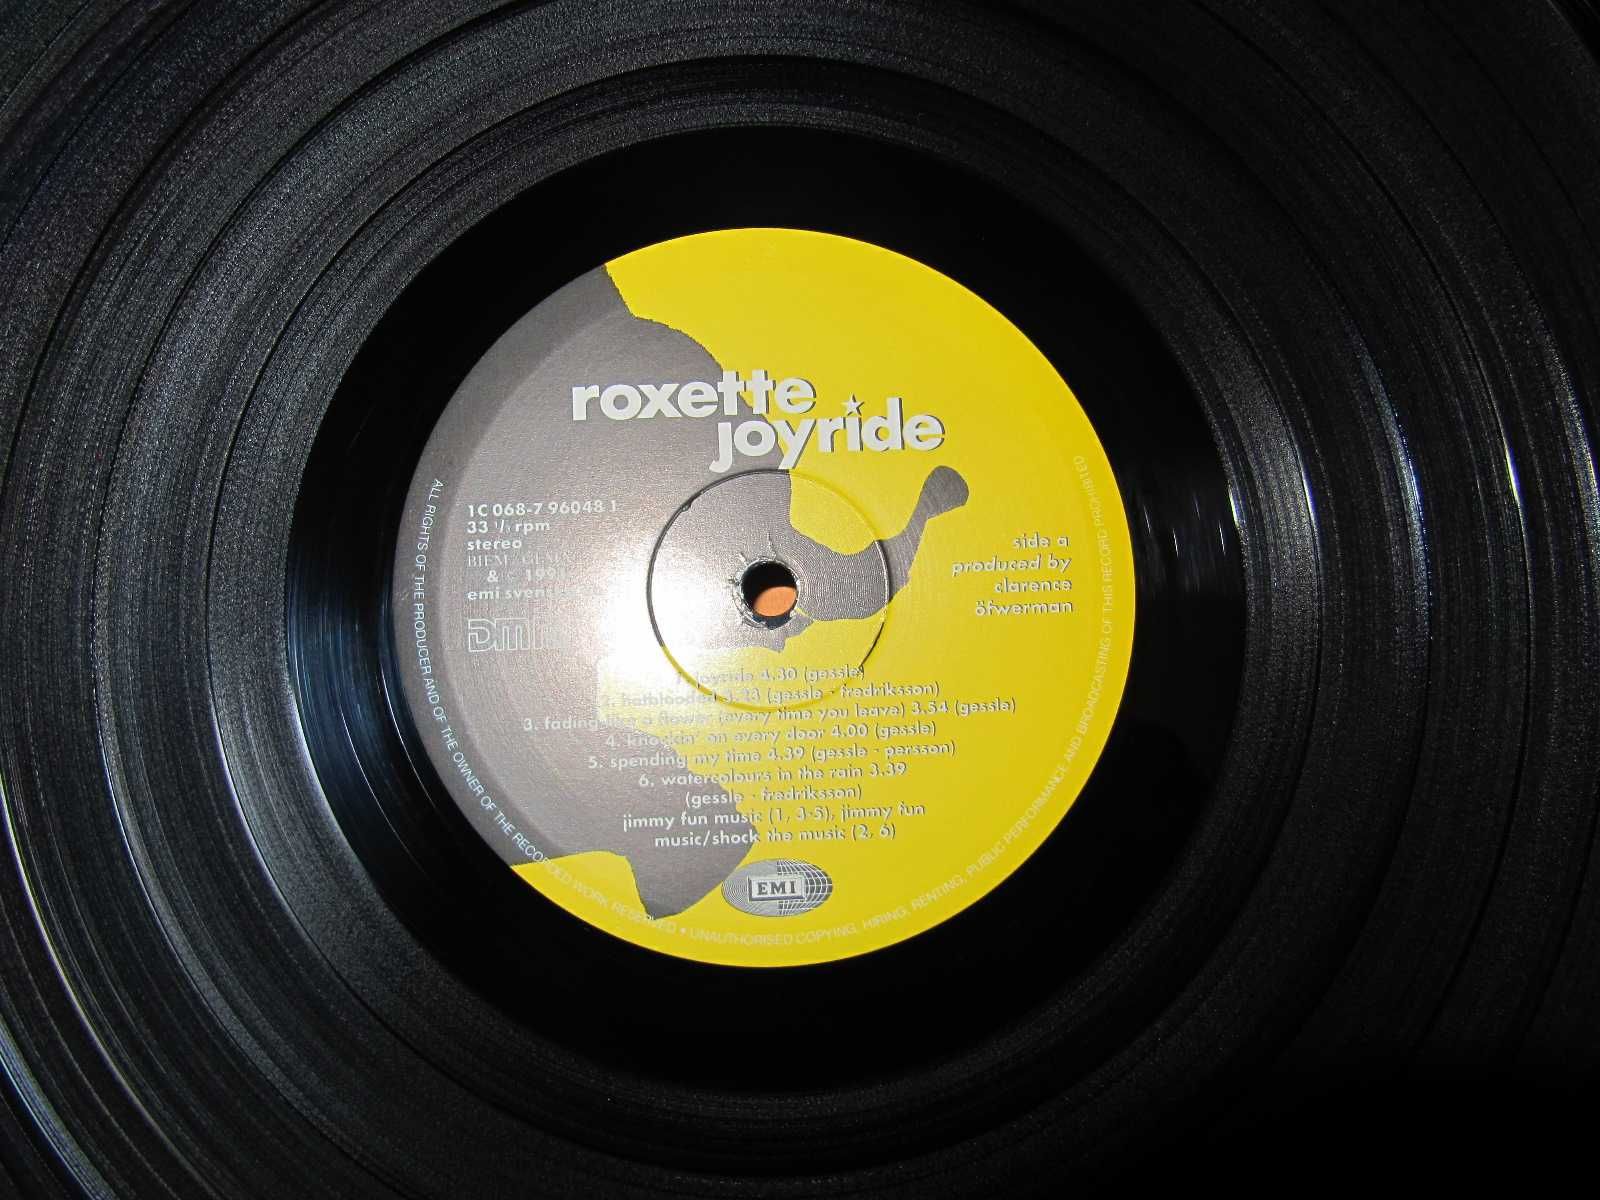 КУЛЬТОВЫЙ Виниловый Альбом ROXETTE -Joyride- 1991 *ОРИГИНАЛ